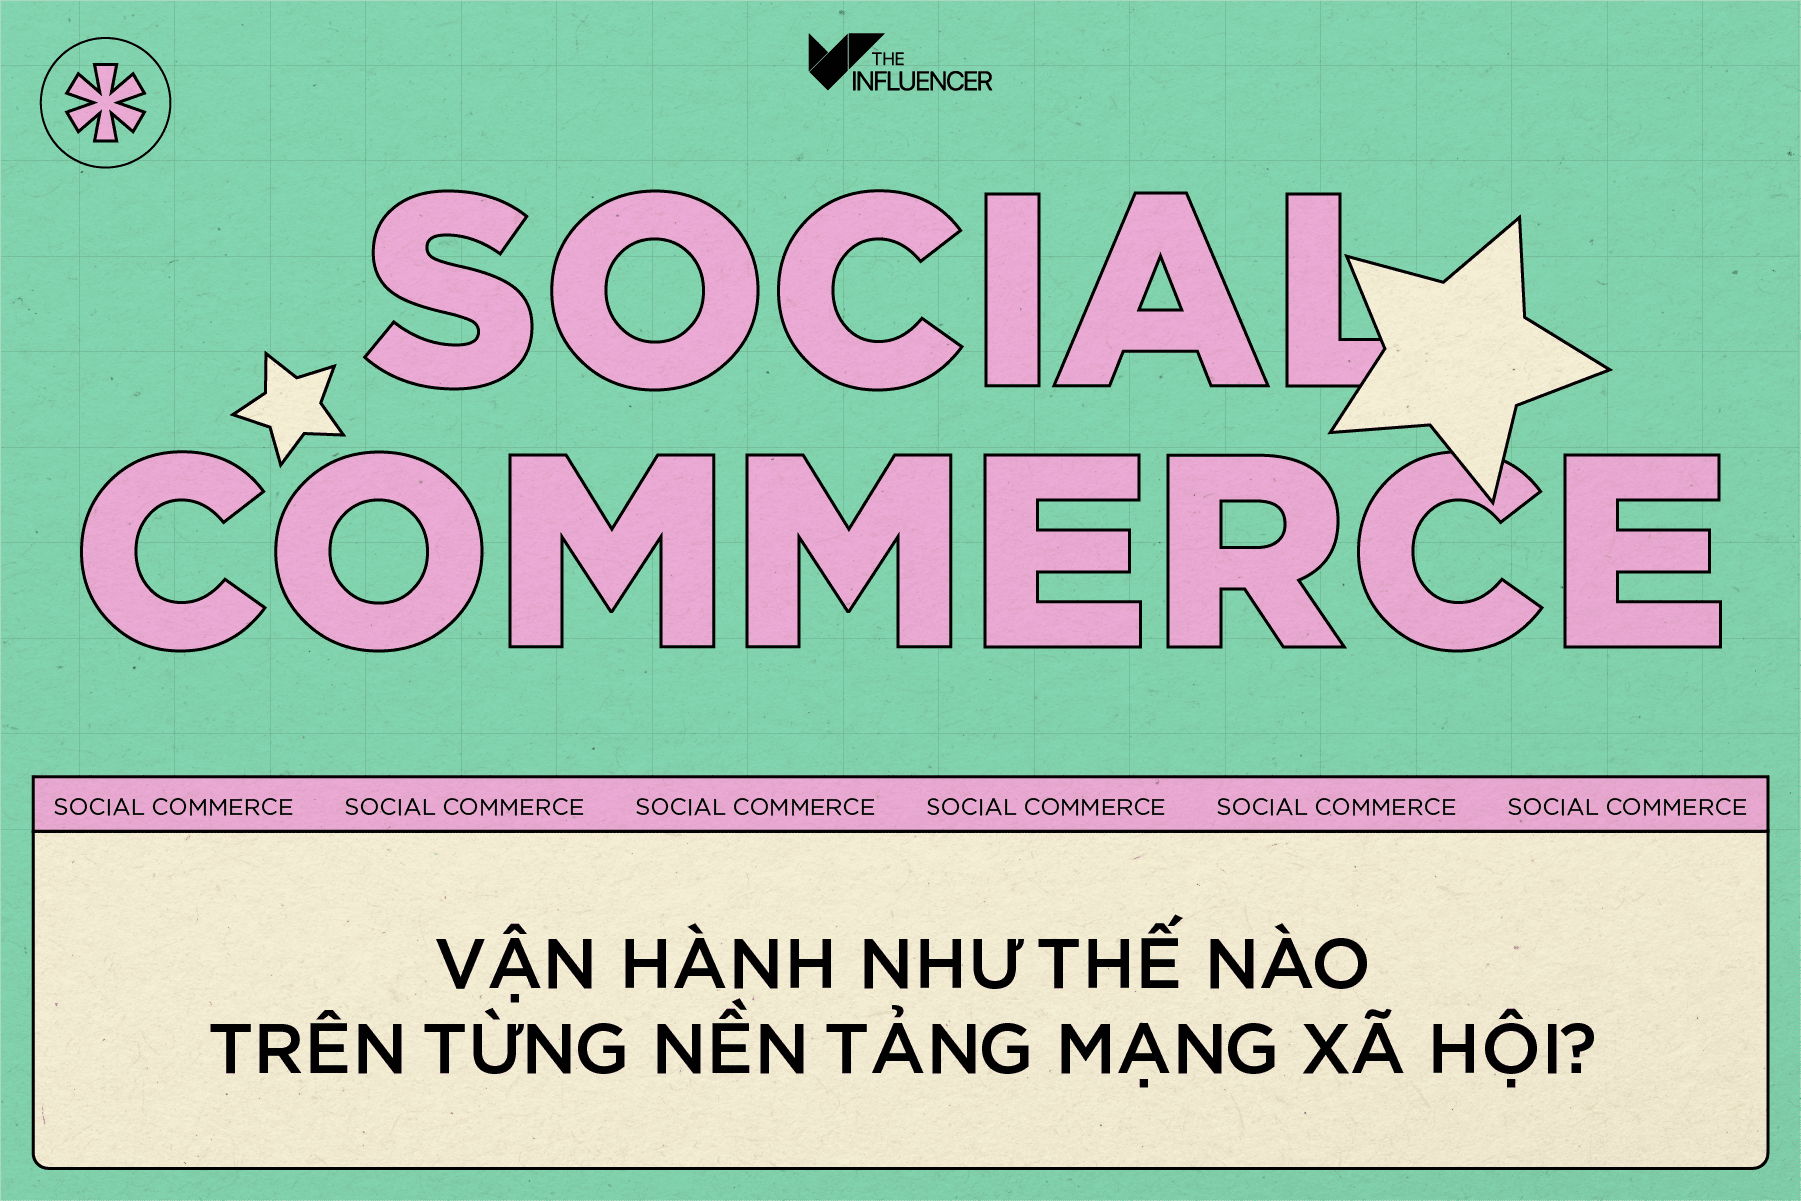 Social Commerce vận hành như thế nào trên từng nền tảng mạng xã hội?